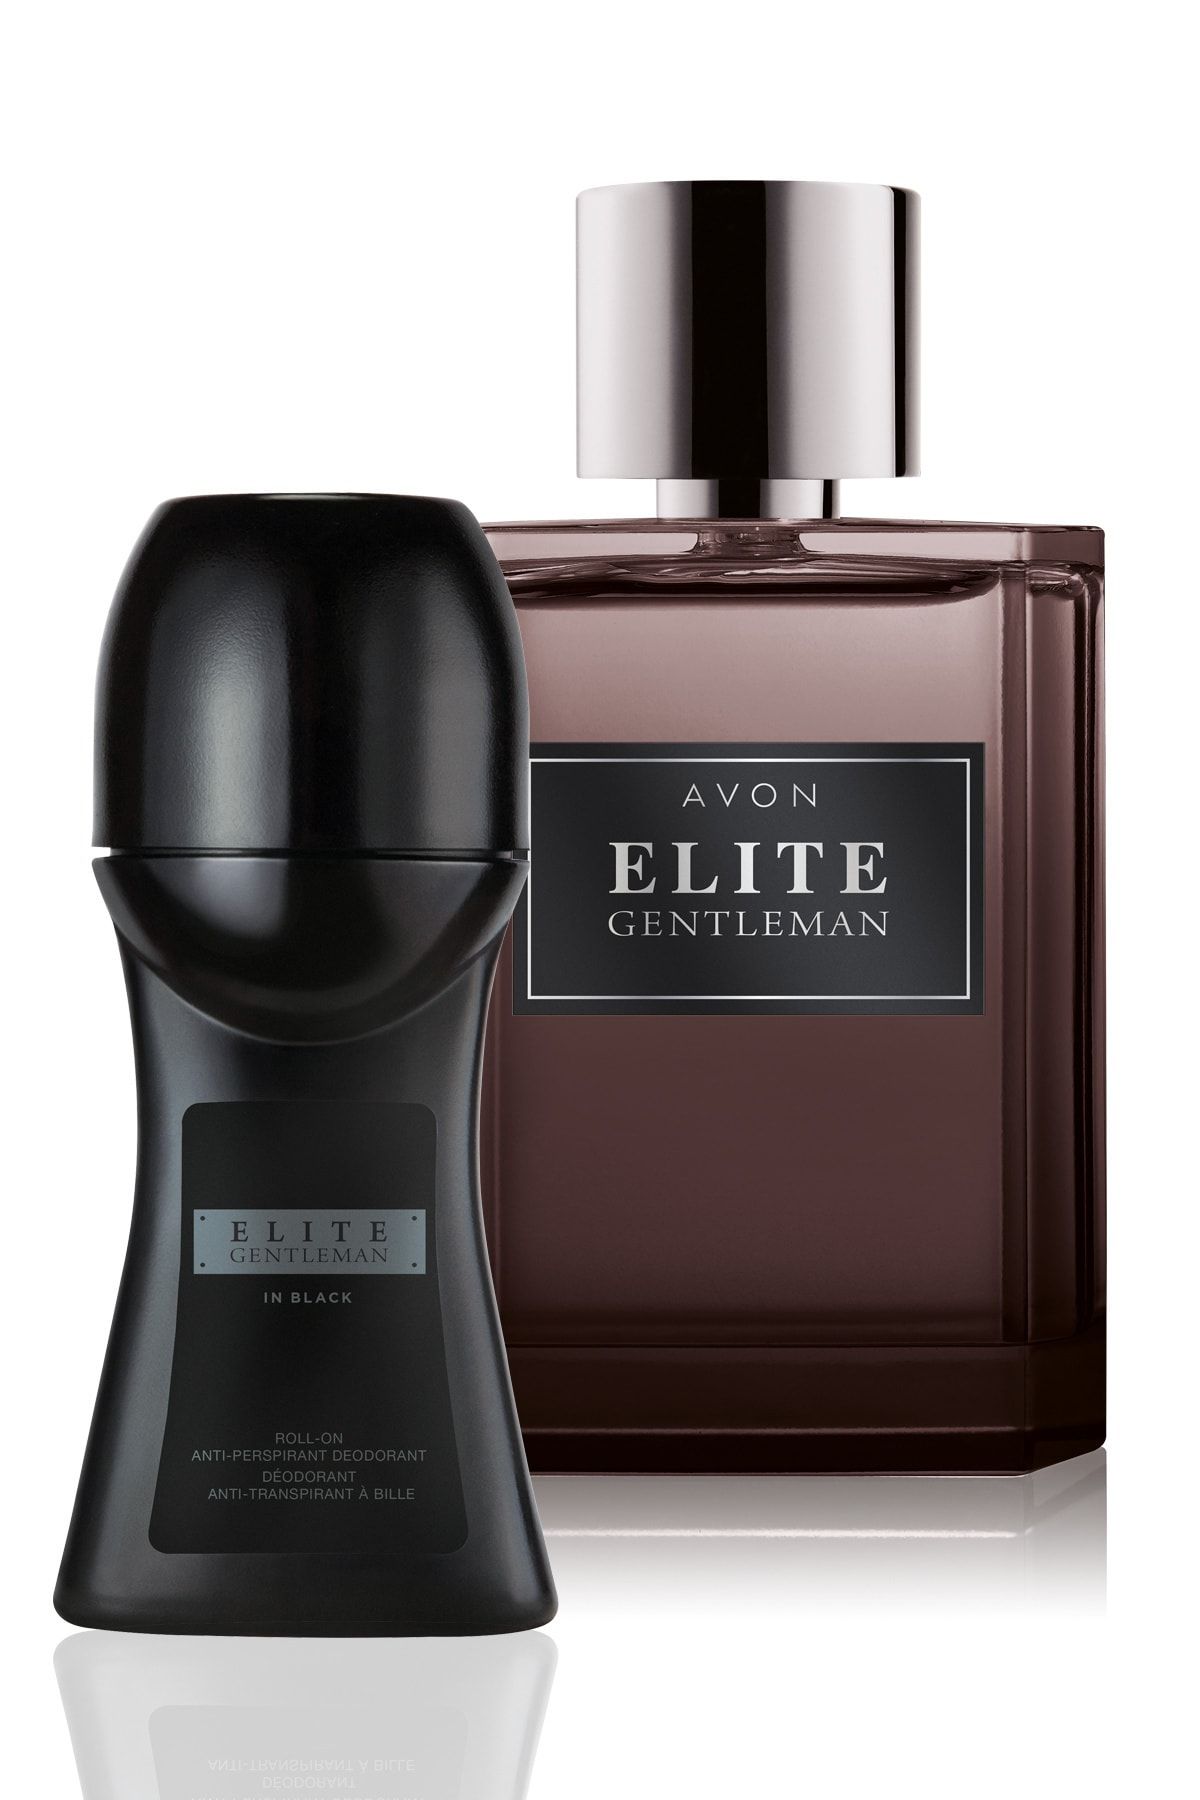 Avon Elite Gentleman. Avon Elite Gentleman дезодорант. Avon Elite Gentleman in Black. Elite Gentleman дезодорант. Avon elite